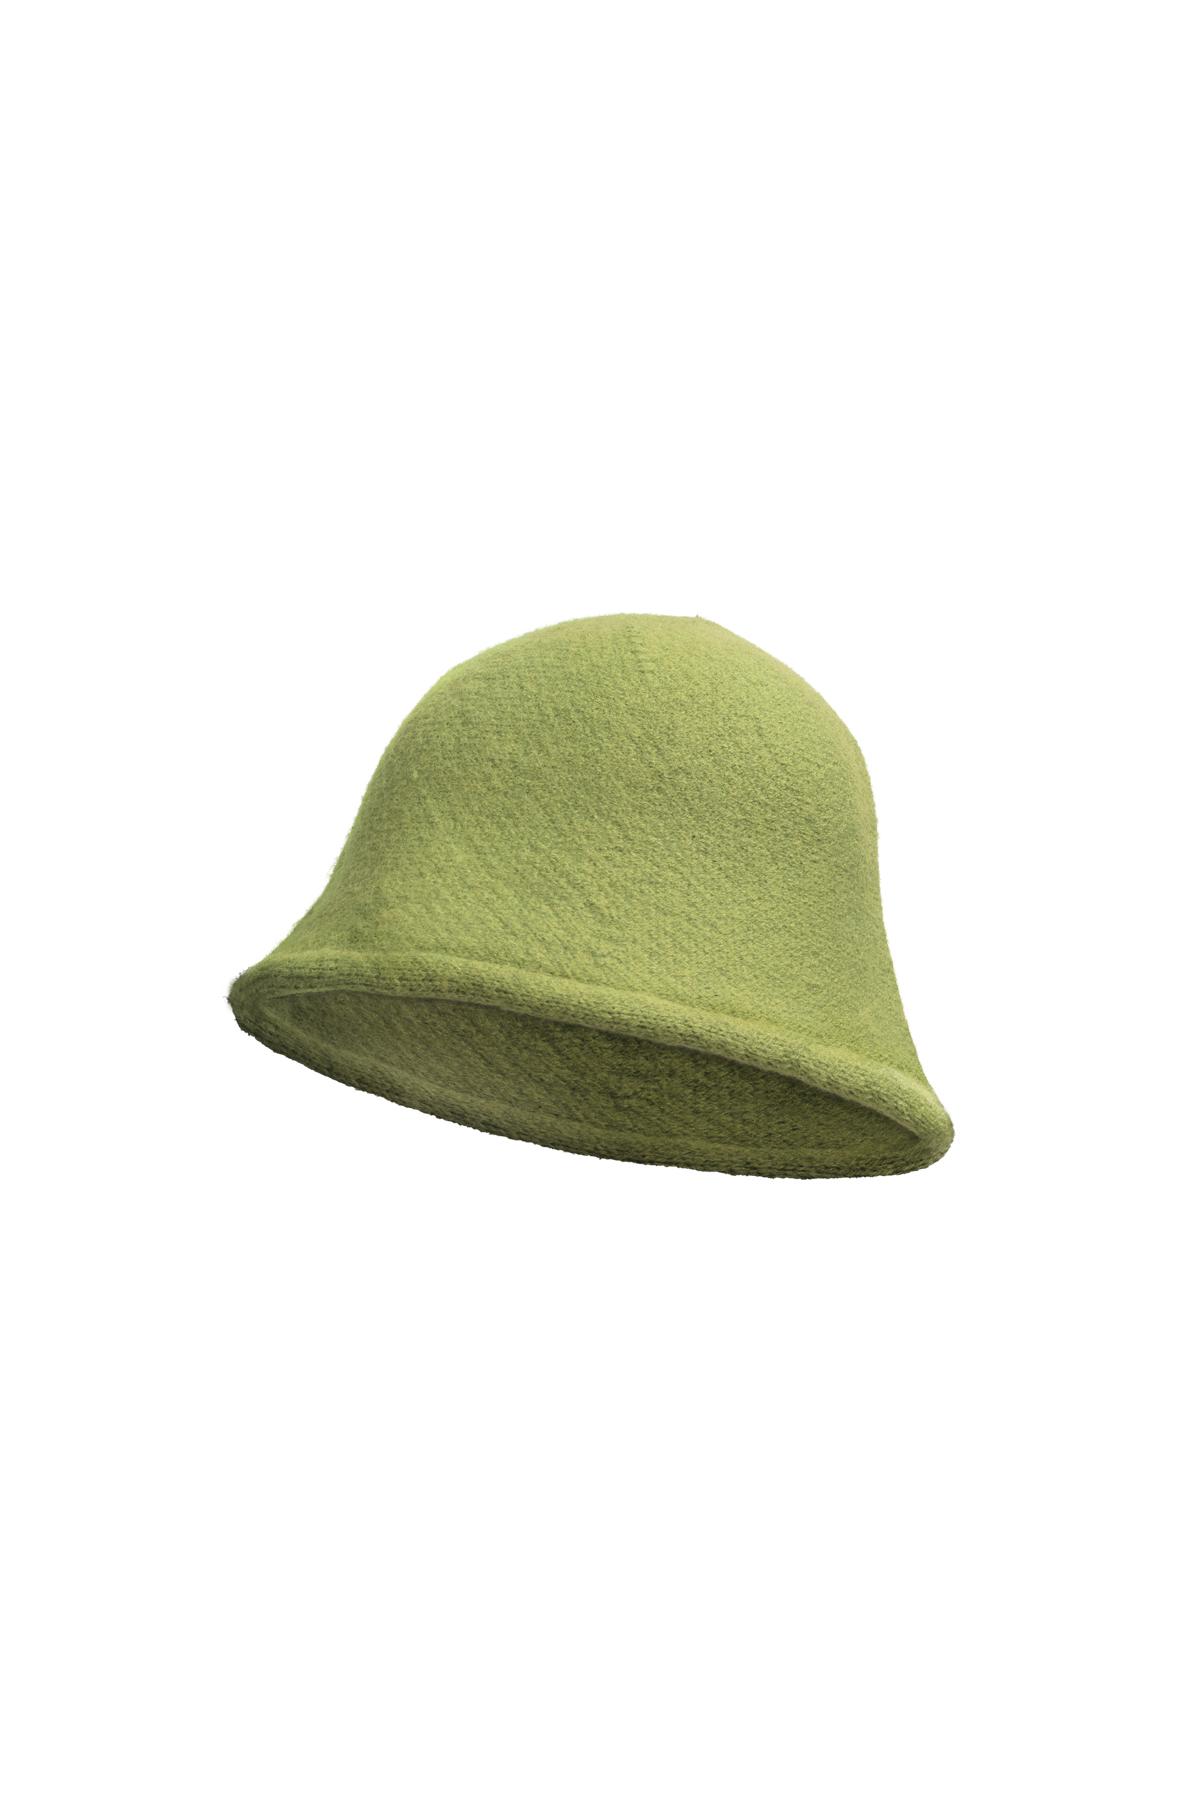 Kova şapka düz renk Green Acrylic 